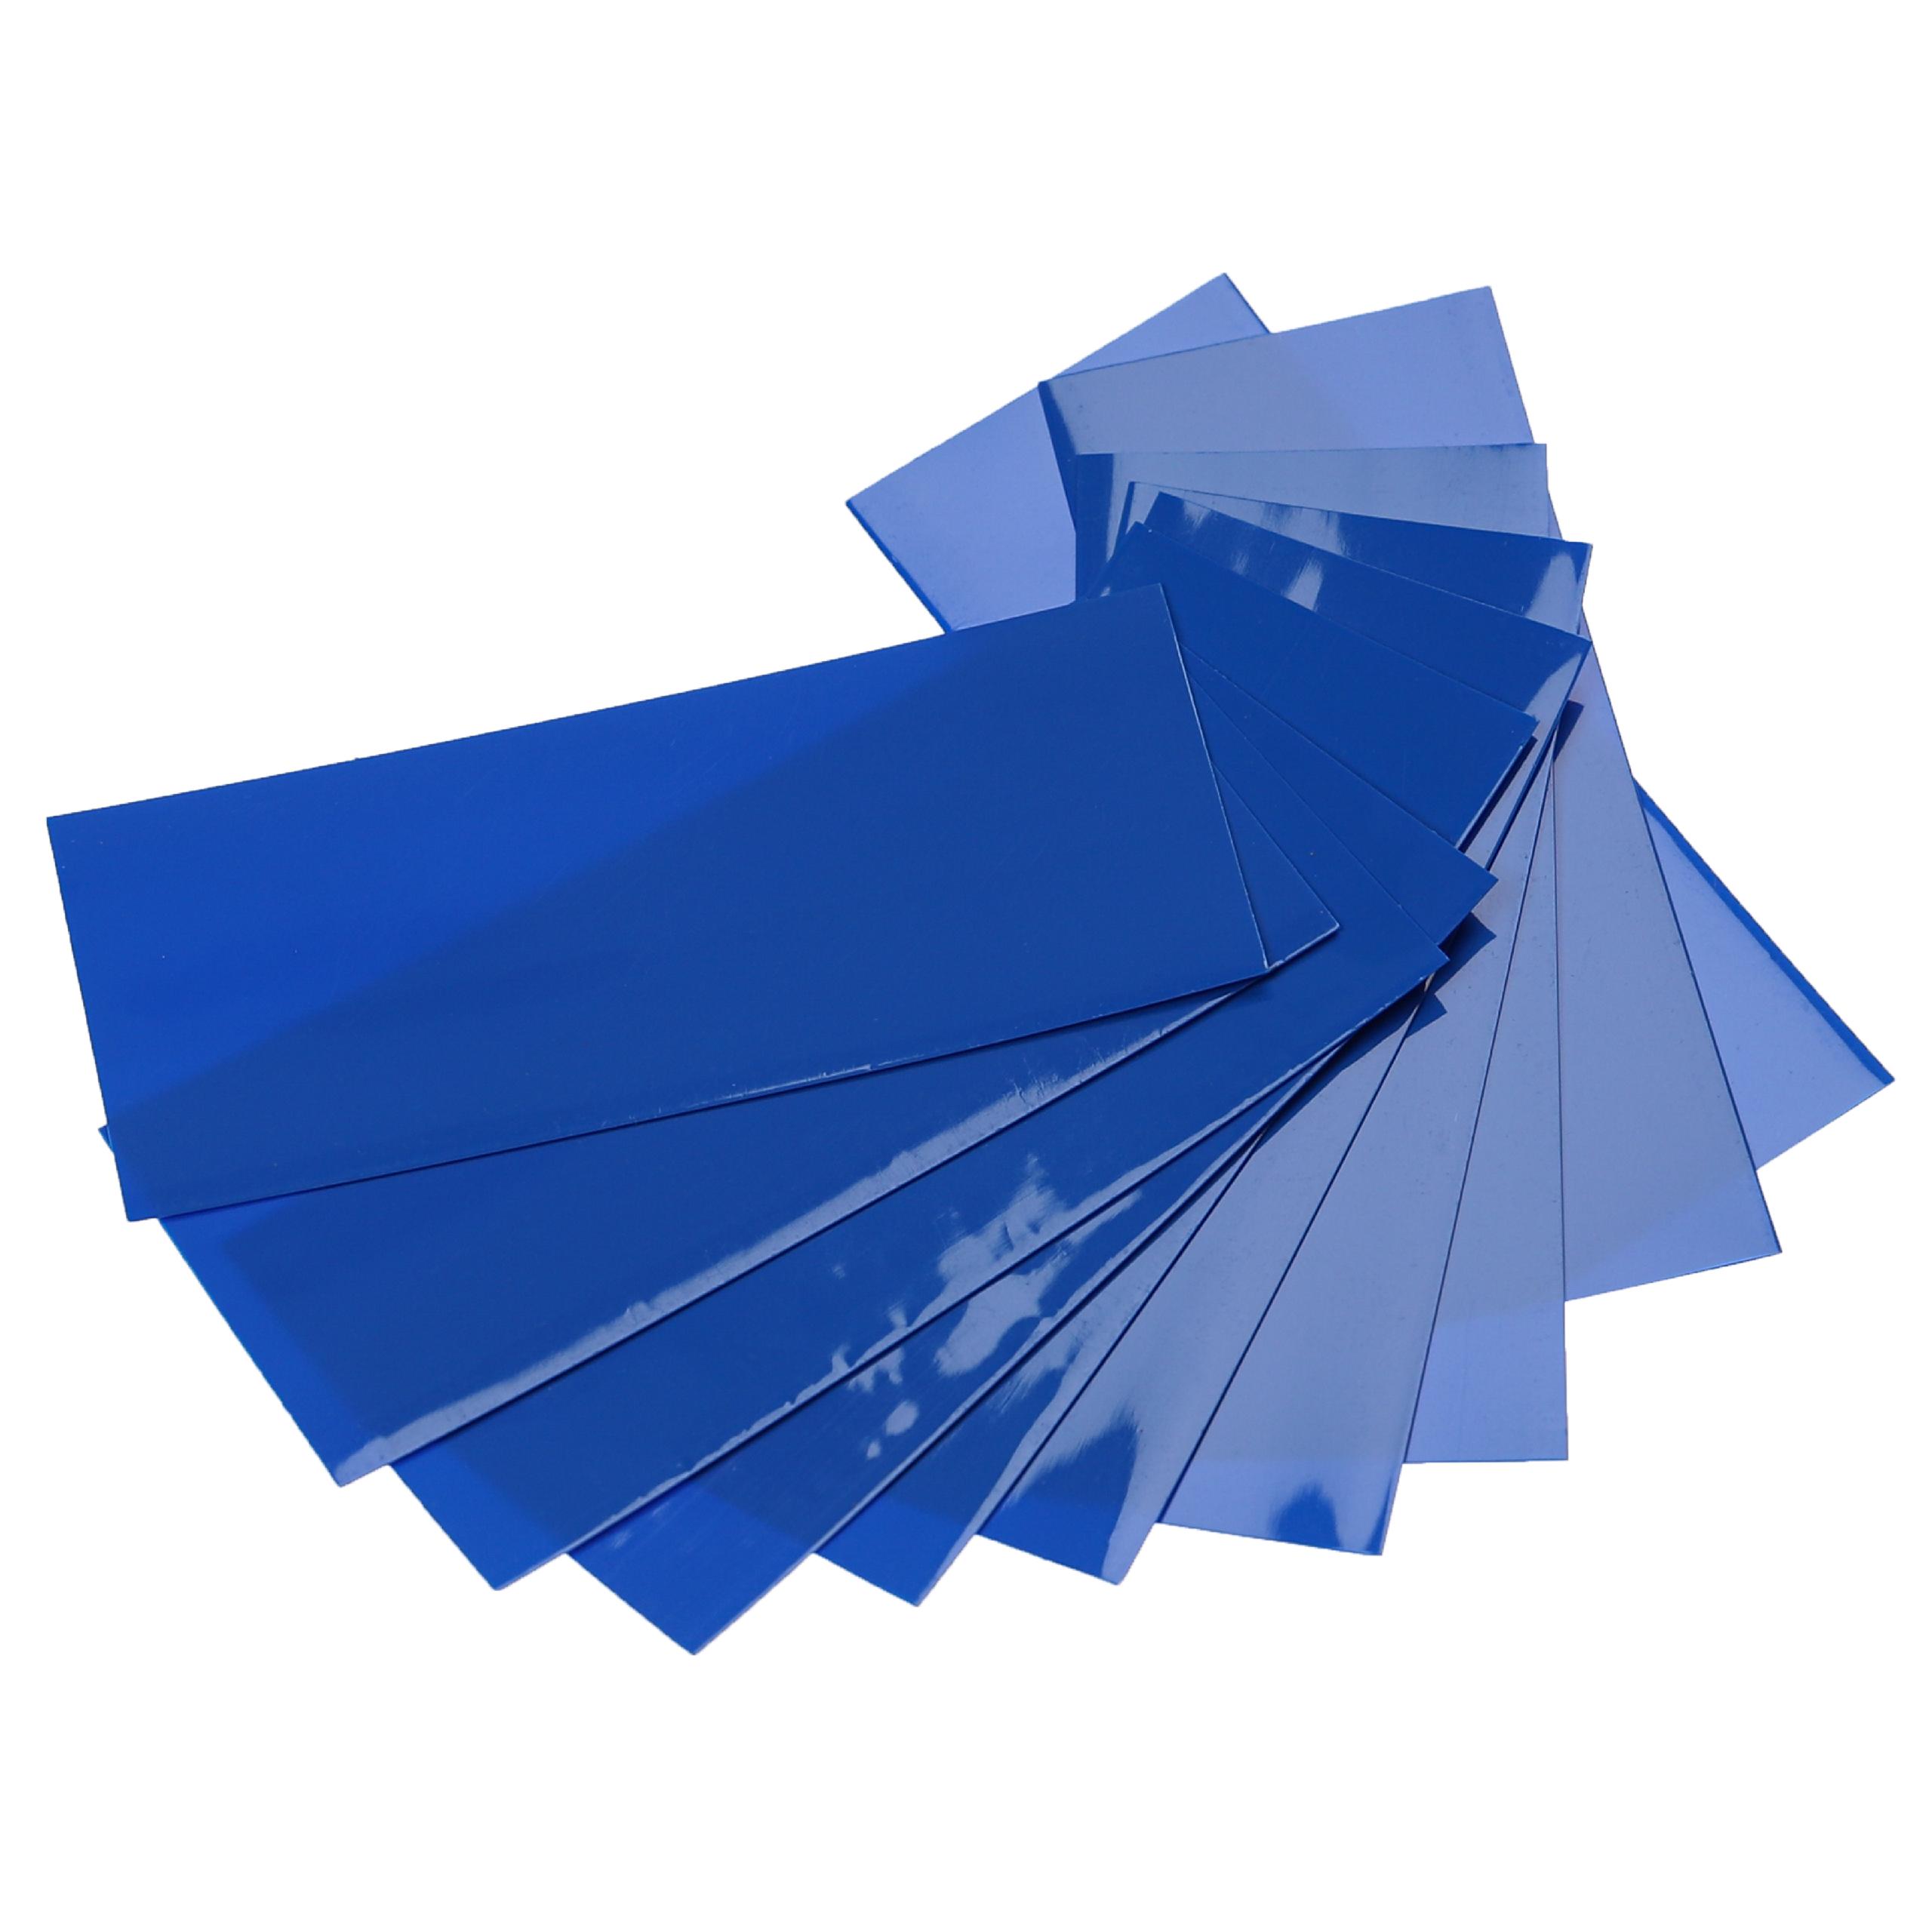 10x Gaines thermorétractables adaptées pour batteries 18650 - Film rétractable bleu